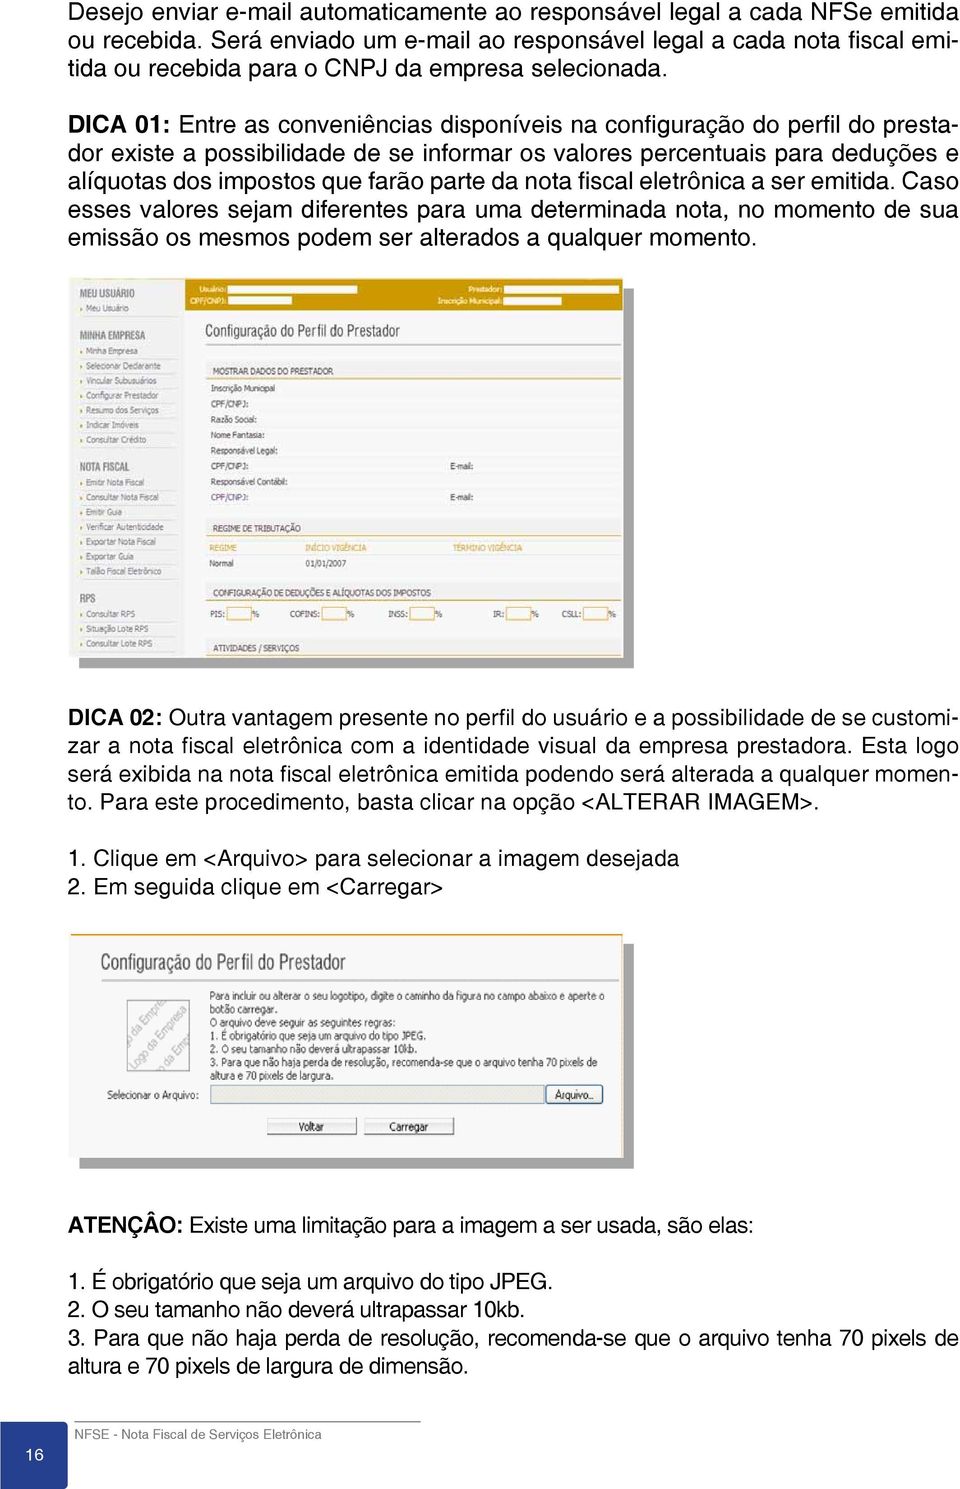 DICA 01: Entre as conveniências disponíveis na configuração do perfil do prestador existe a possibilidade de se informar os valores percentuais para deduções e alíquotas dos impostos que farão parte